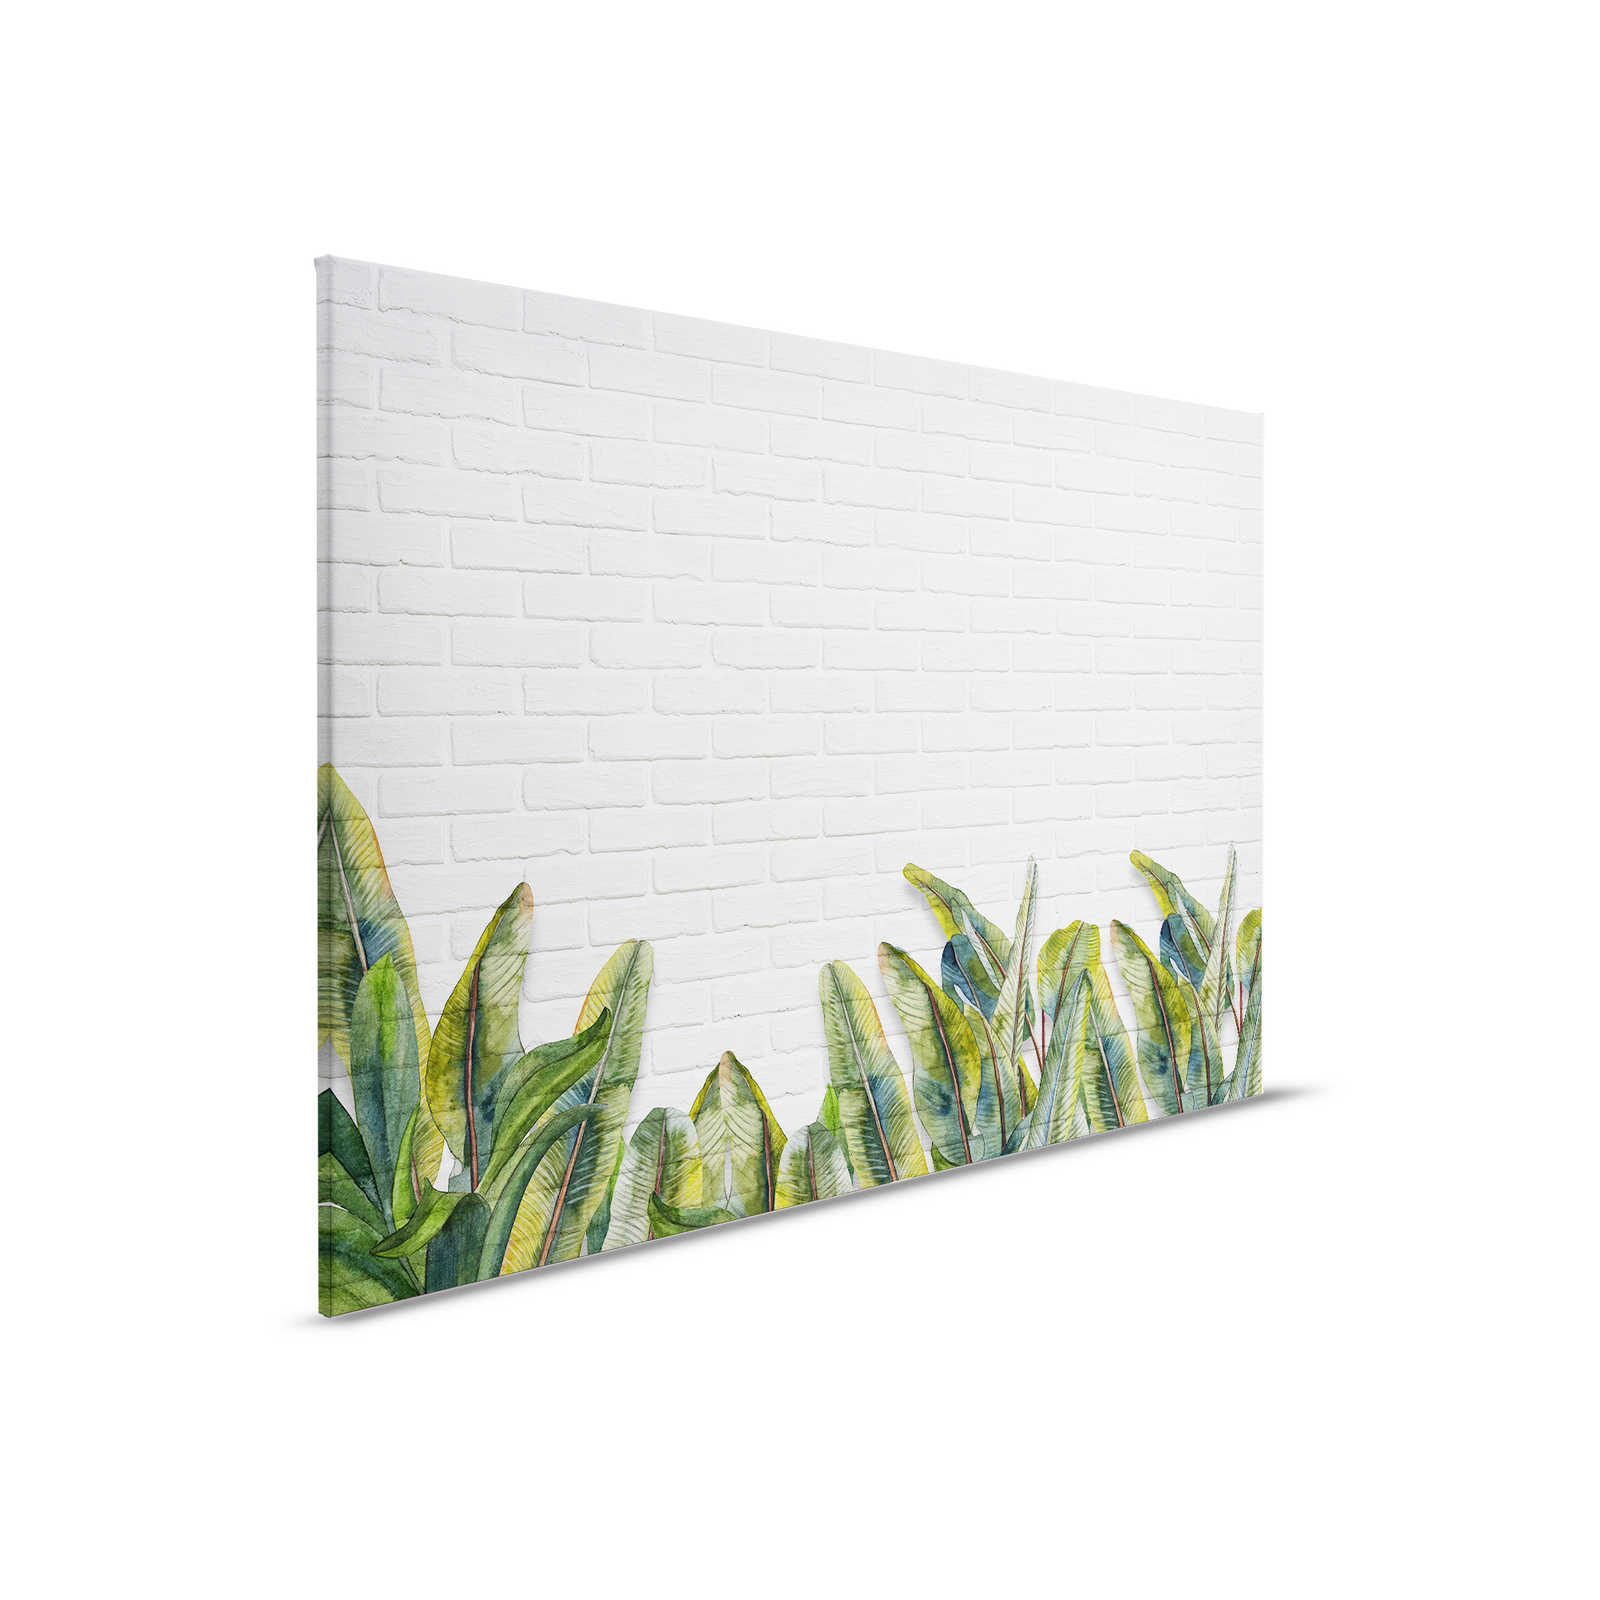 Canvas schilderij met bladeren voor witte bakstenen muur - 0.90 m x 0.60 m
